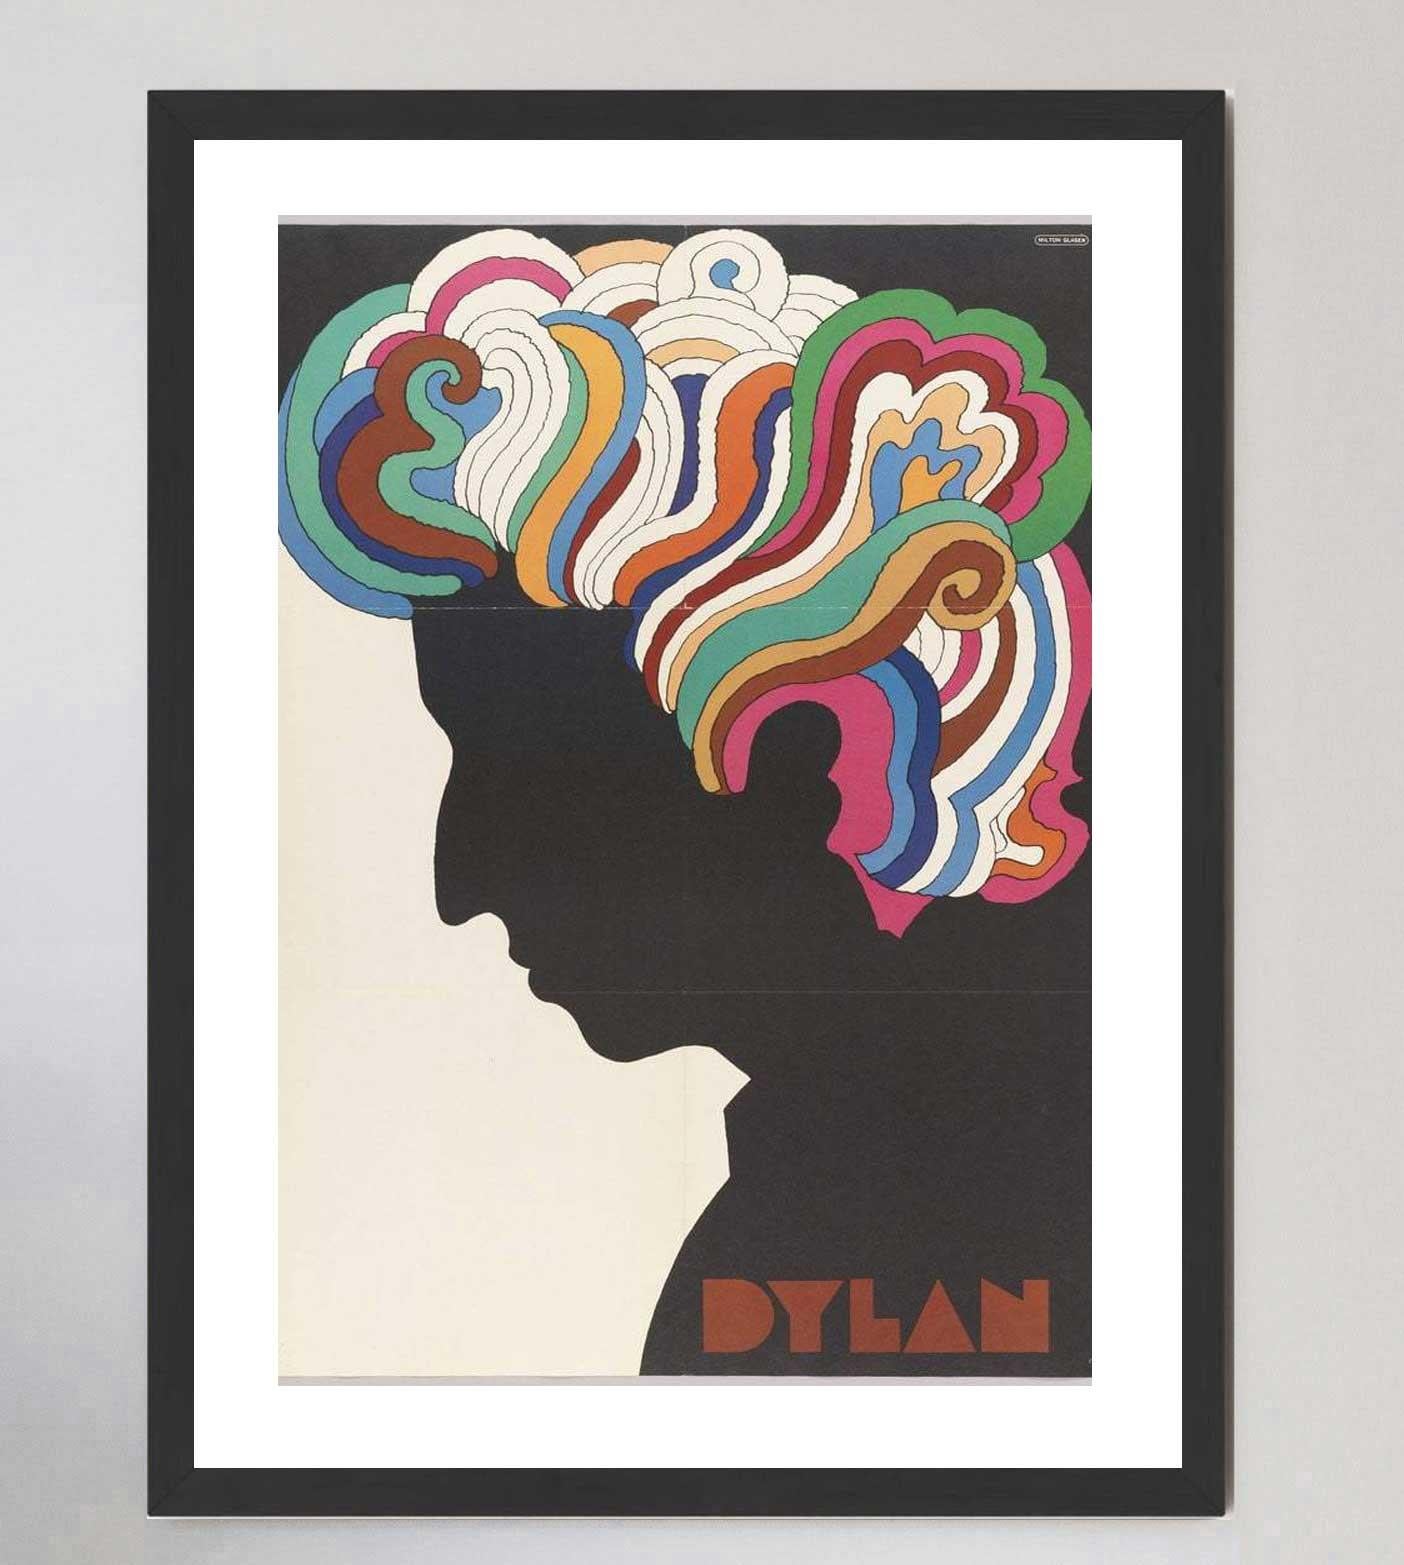 Der berühmte Grafikdesigner Milton Glaser erhielt den Auftrag, dieses besondere Plakat für das Album Greatest Hits von Bob Dylan aus dem Jahr 1966 zu gestalten. Da Dylan bei einem Motorradunfall schwer verletzt wurde, sollte diese Collaboration